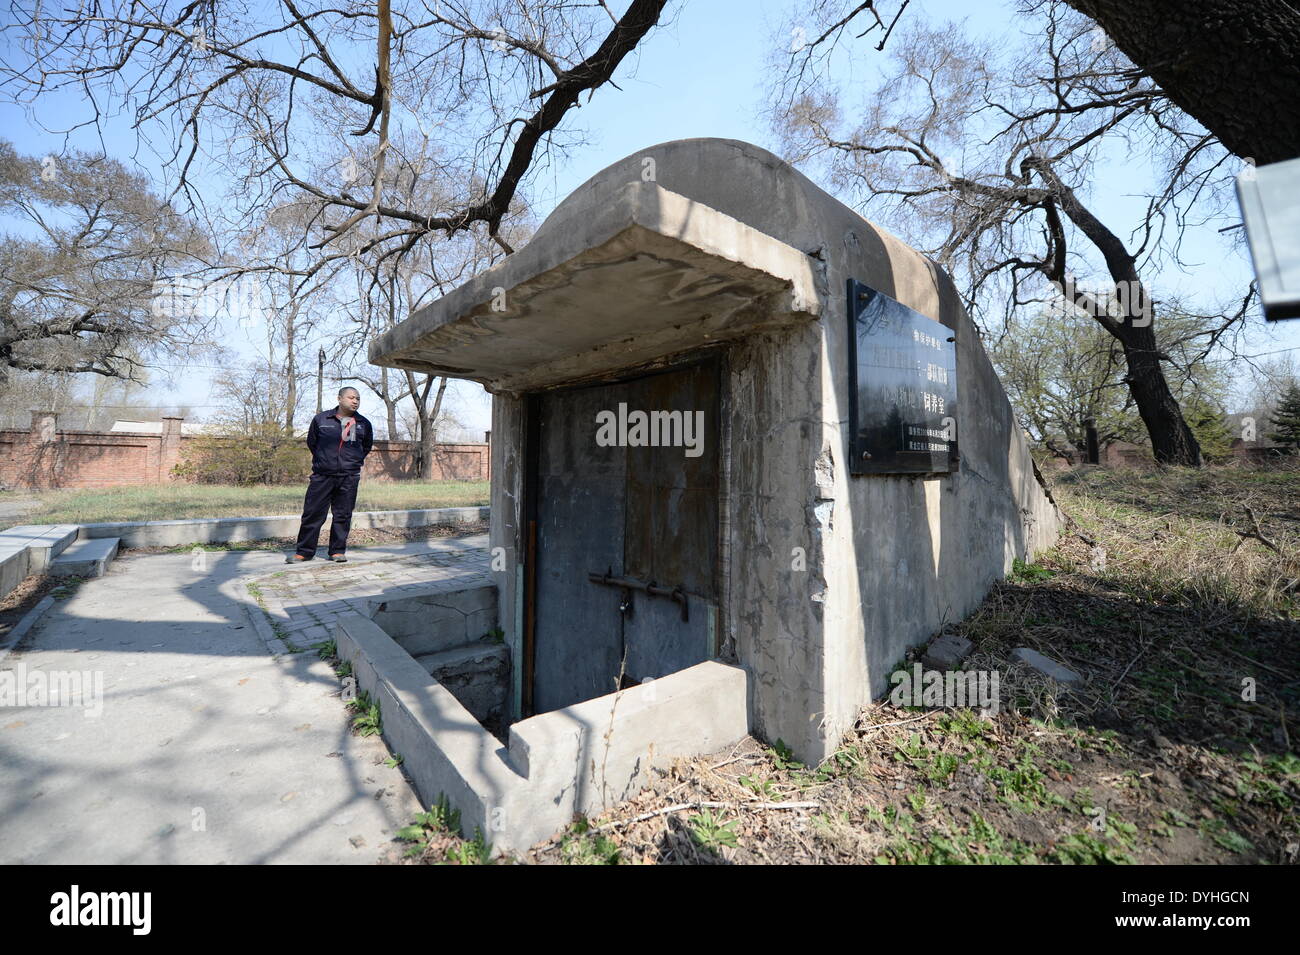 (140418) -- HARBIN, 18 avril 2014 (Xinhua) -- Photo prise le 18 avril 2014 montre les ruines d'une entrée de la reproduction animale chambres de l'Unité 731 dans la région de Harbin, capitale de la province du nord-est de la Chine. L'unité 731 était une à base de Harbin de guerre chimique et biologique de l'unité de recherche de l'armée japonaise pendant la DEUXIÈME GUERRE MONDIALE. L'Unité 731 ruines des installations à Harbin sont les preuves d'atrocités pendant la guerre commises par les envahisseurs japonais en Chine. L'unité 731 ont mené une série d'expériences dont l'objet les victimes de vivisections germe, attaques de guerre, essais d'armes nucléaires et d'autres formes de torture. Apri Banque D'Images